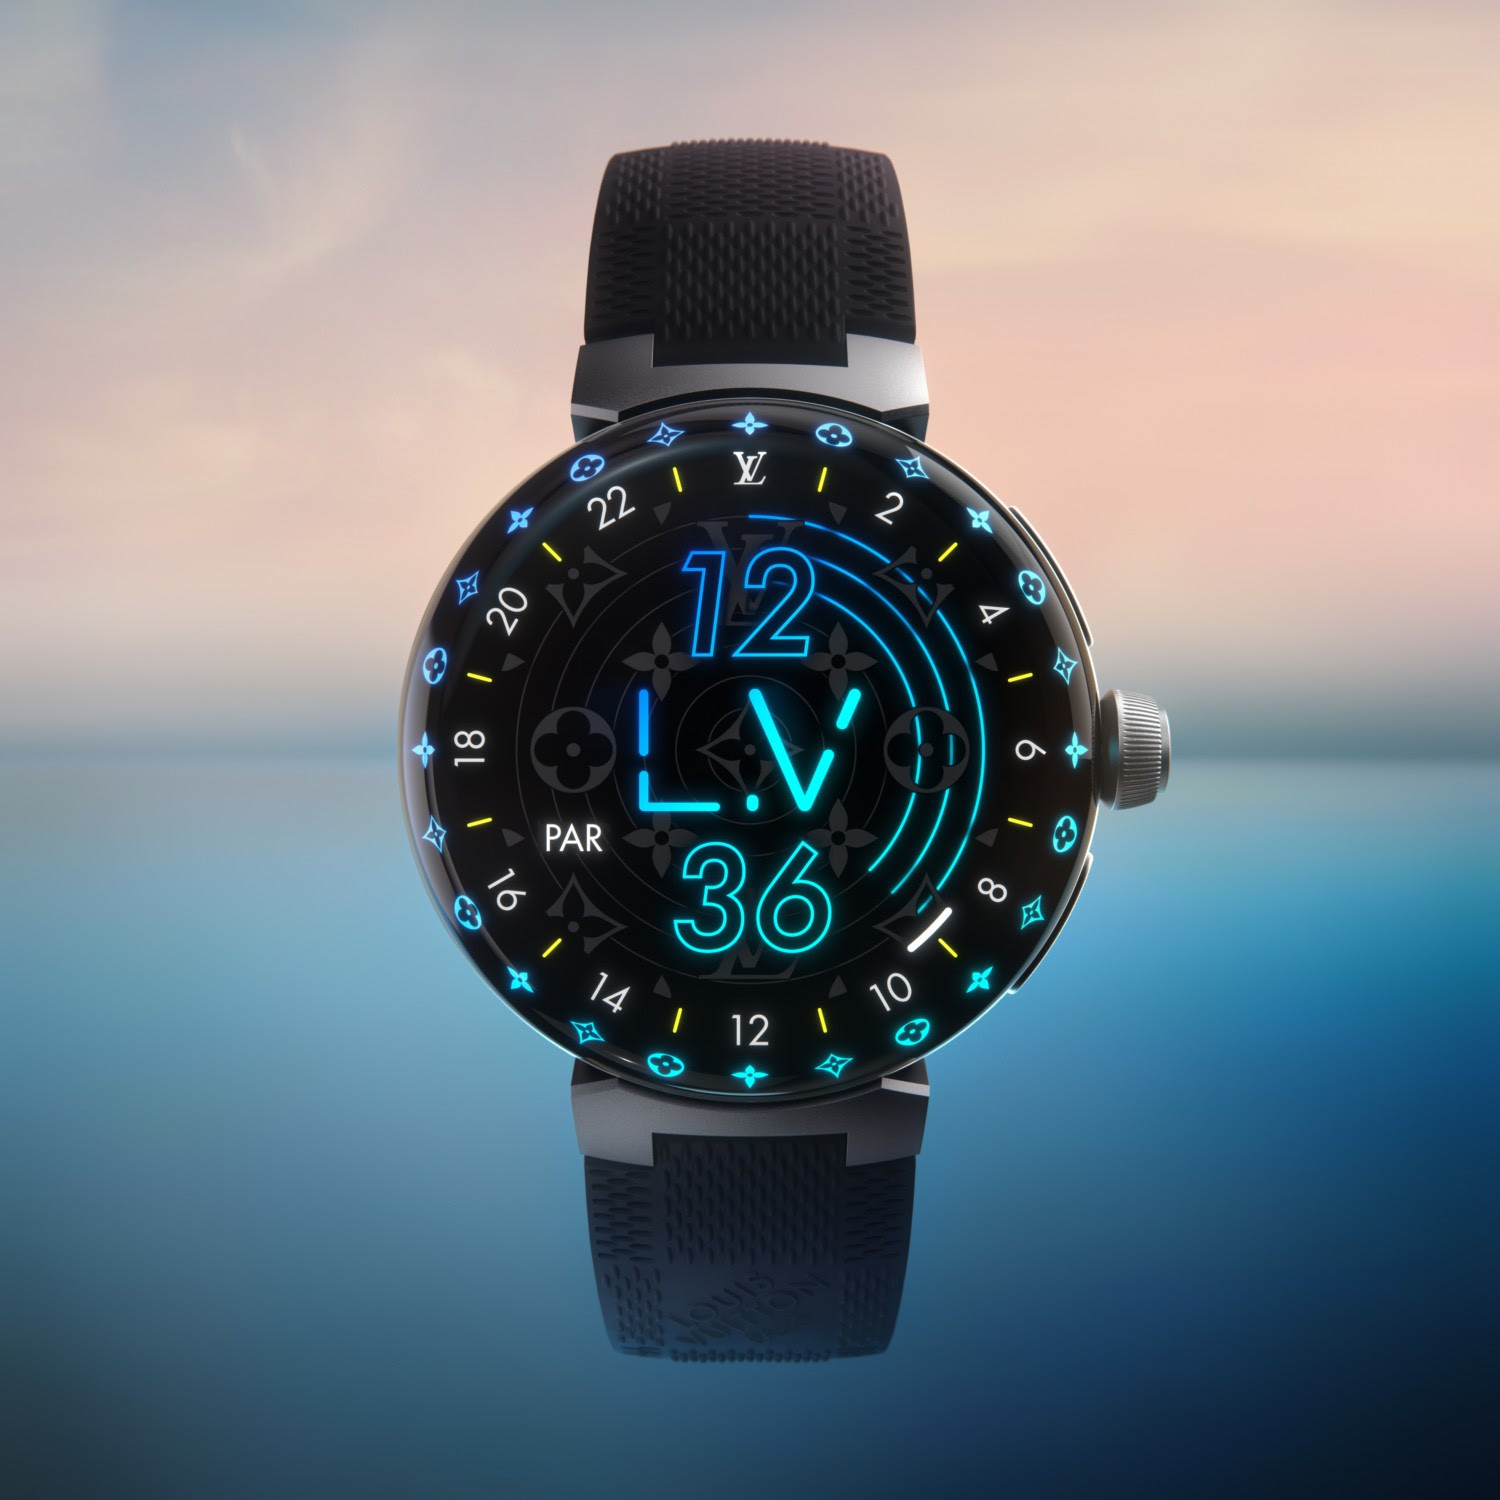 Louis Vuitton Announces the Tambour Horizon Light Up Watch - V Magazine